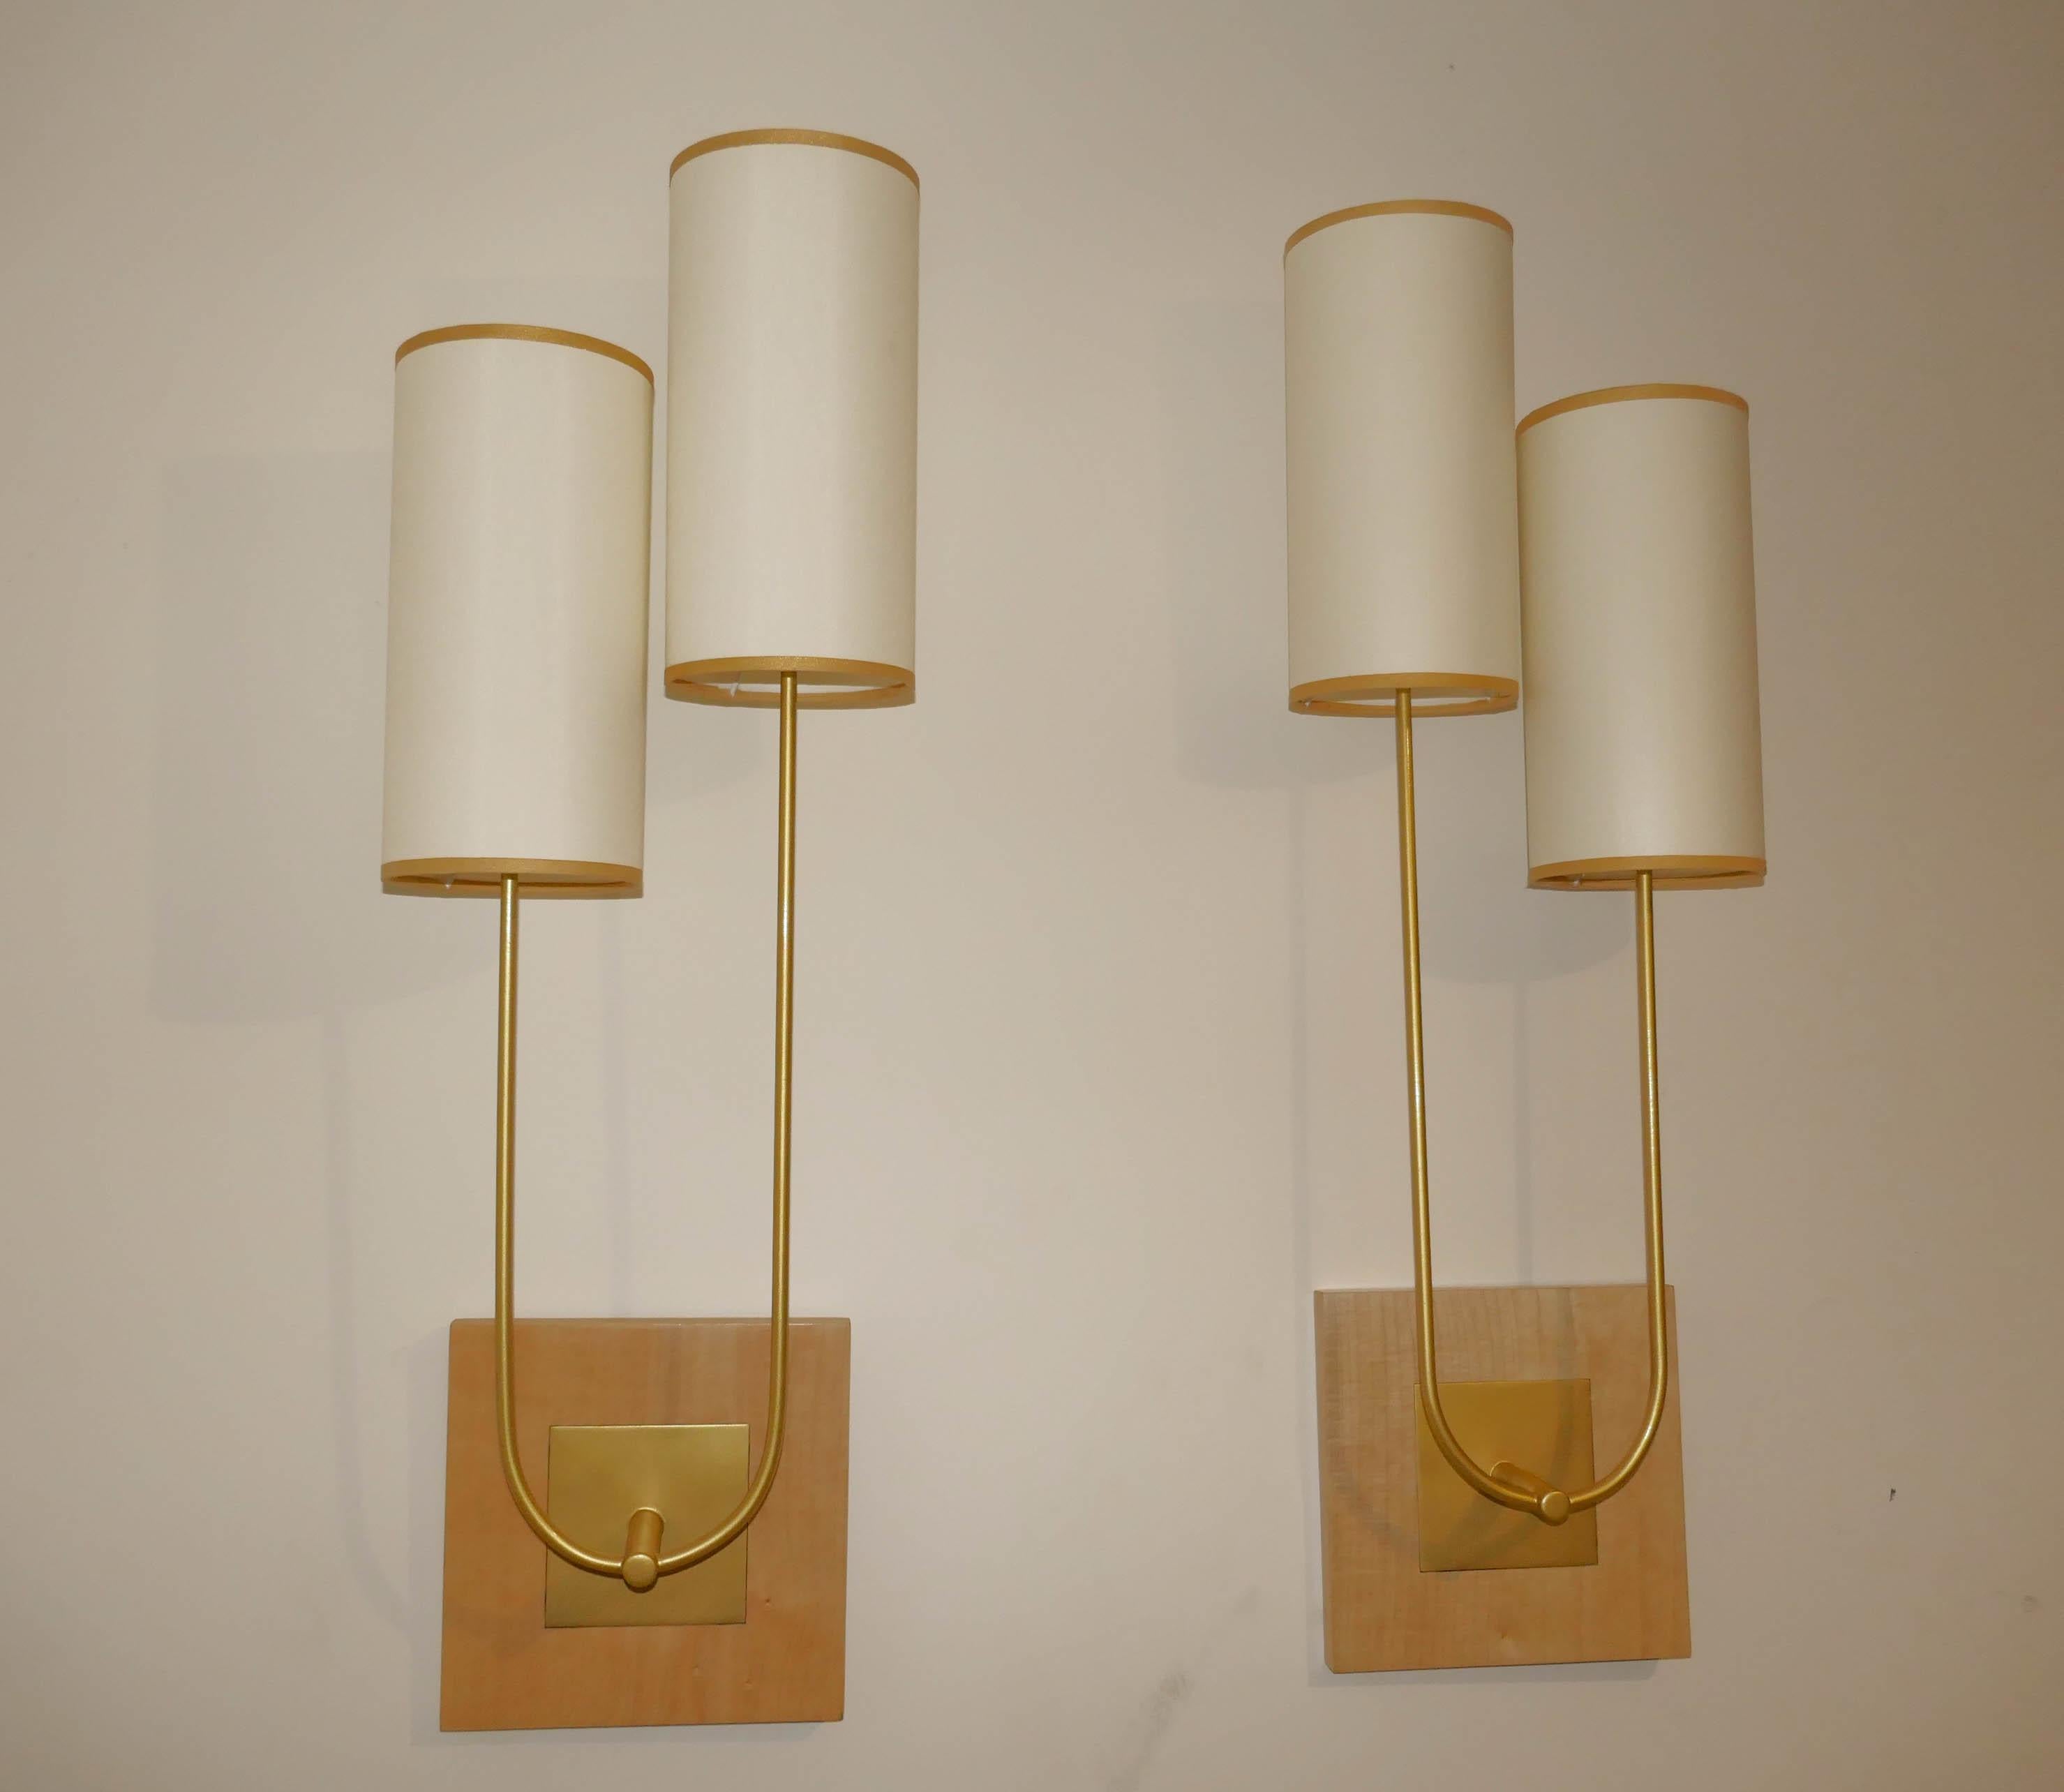 Paar Wandleuchten aus Metall mit Goldpatina mit Sycomore-Holzplatte. Die Lampenschirme sind aus Seidenstoff mit goldener Borte. Die Wandlampen können mit einem Adapter, der mit den Lampen mitgeliefert wird, mit e27 und b22 Leuchtmitteln bestückt